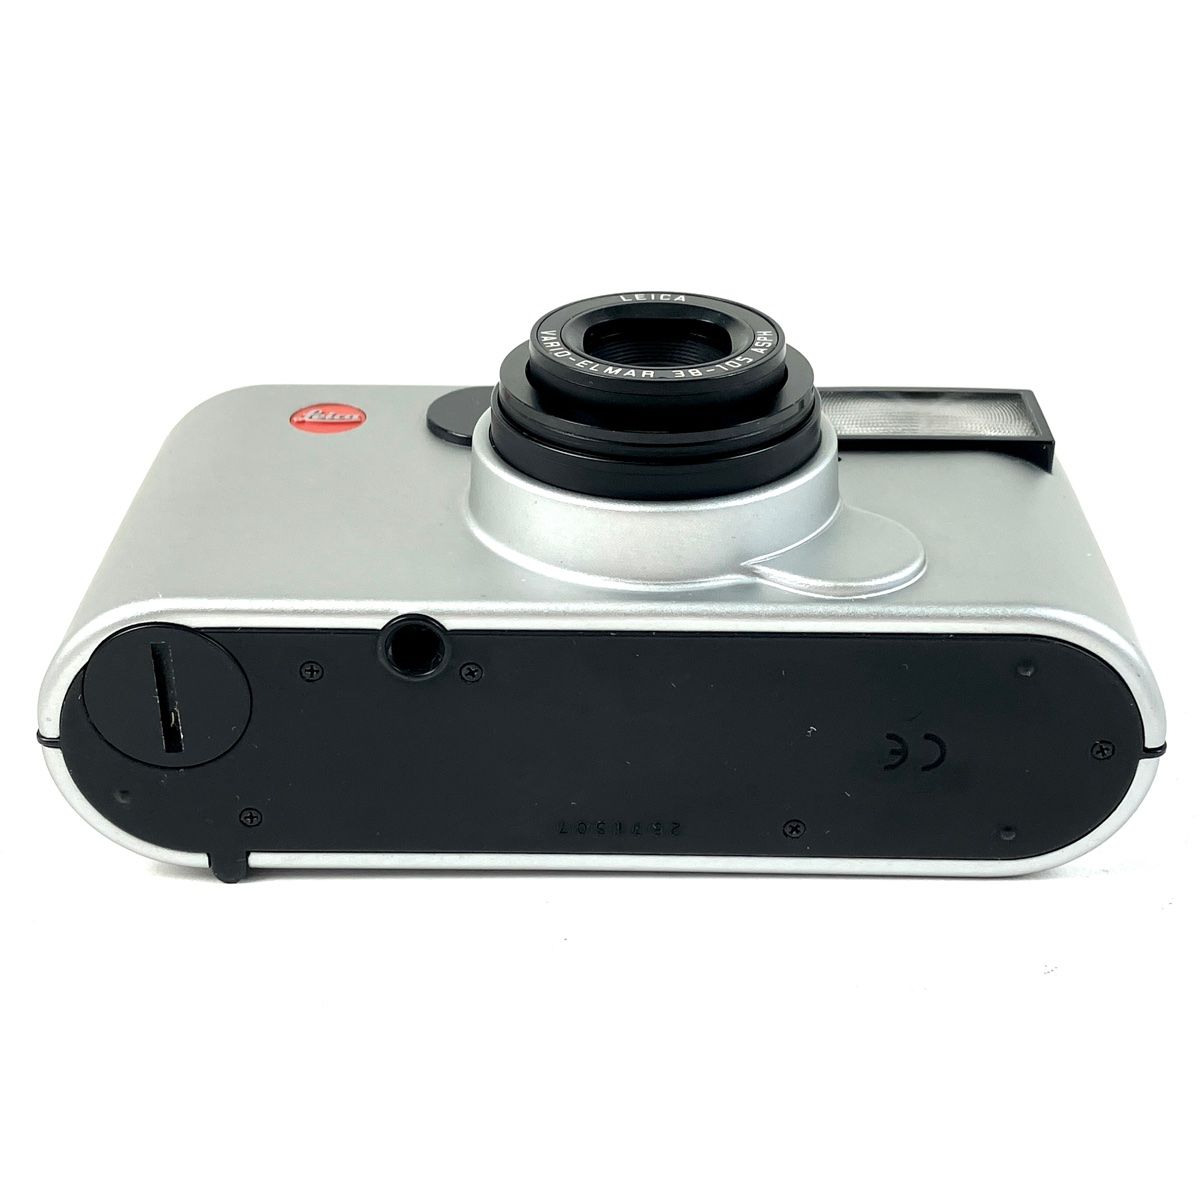 ライカ LEICA C1 VARIO-ELMAR 38-105 ASPH フィルム コンパクトカメラ